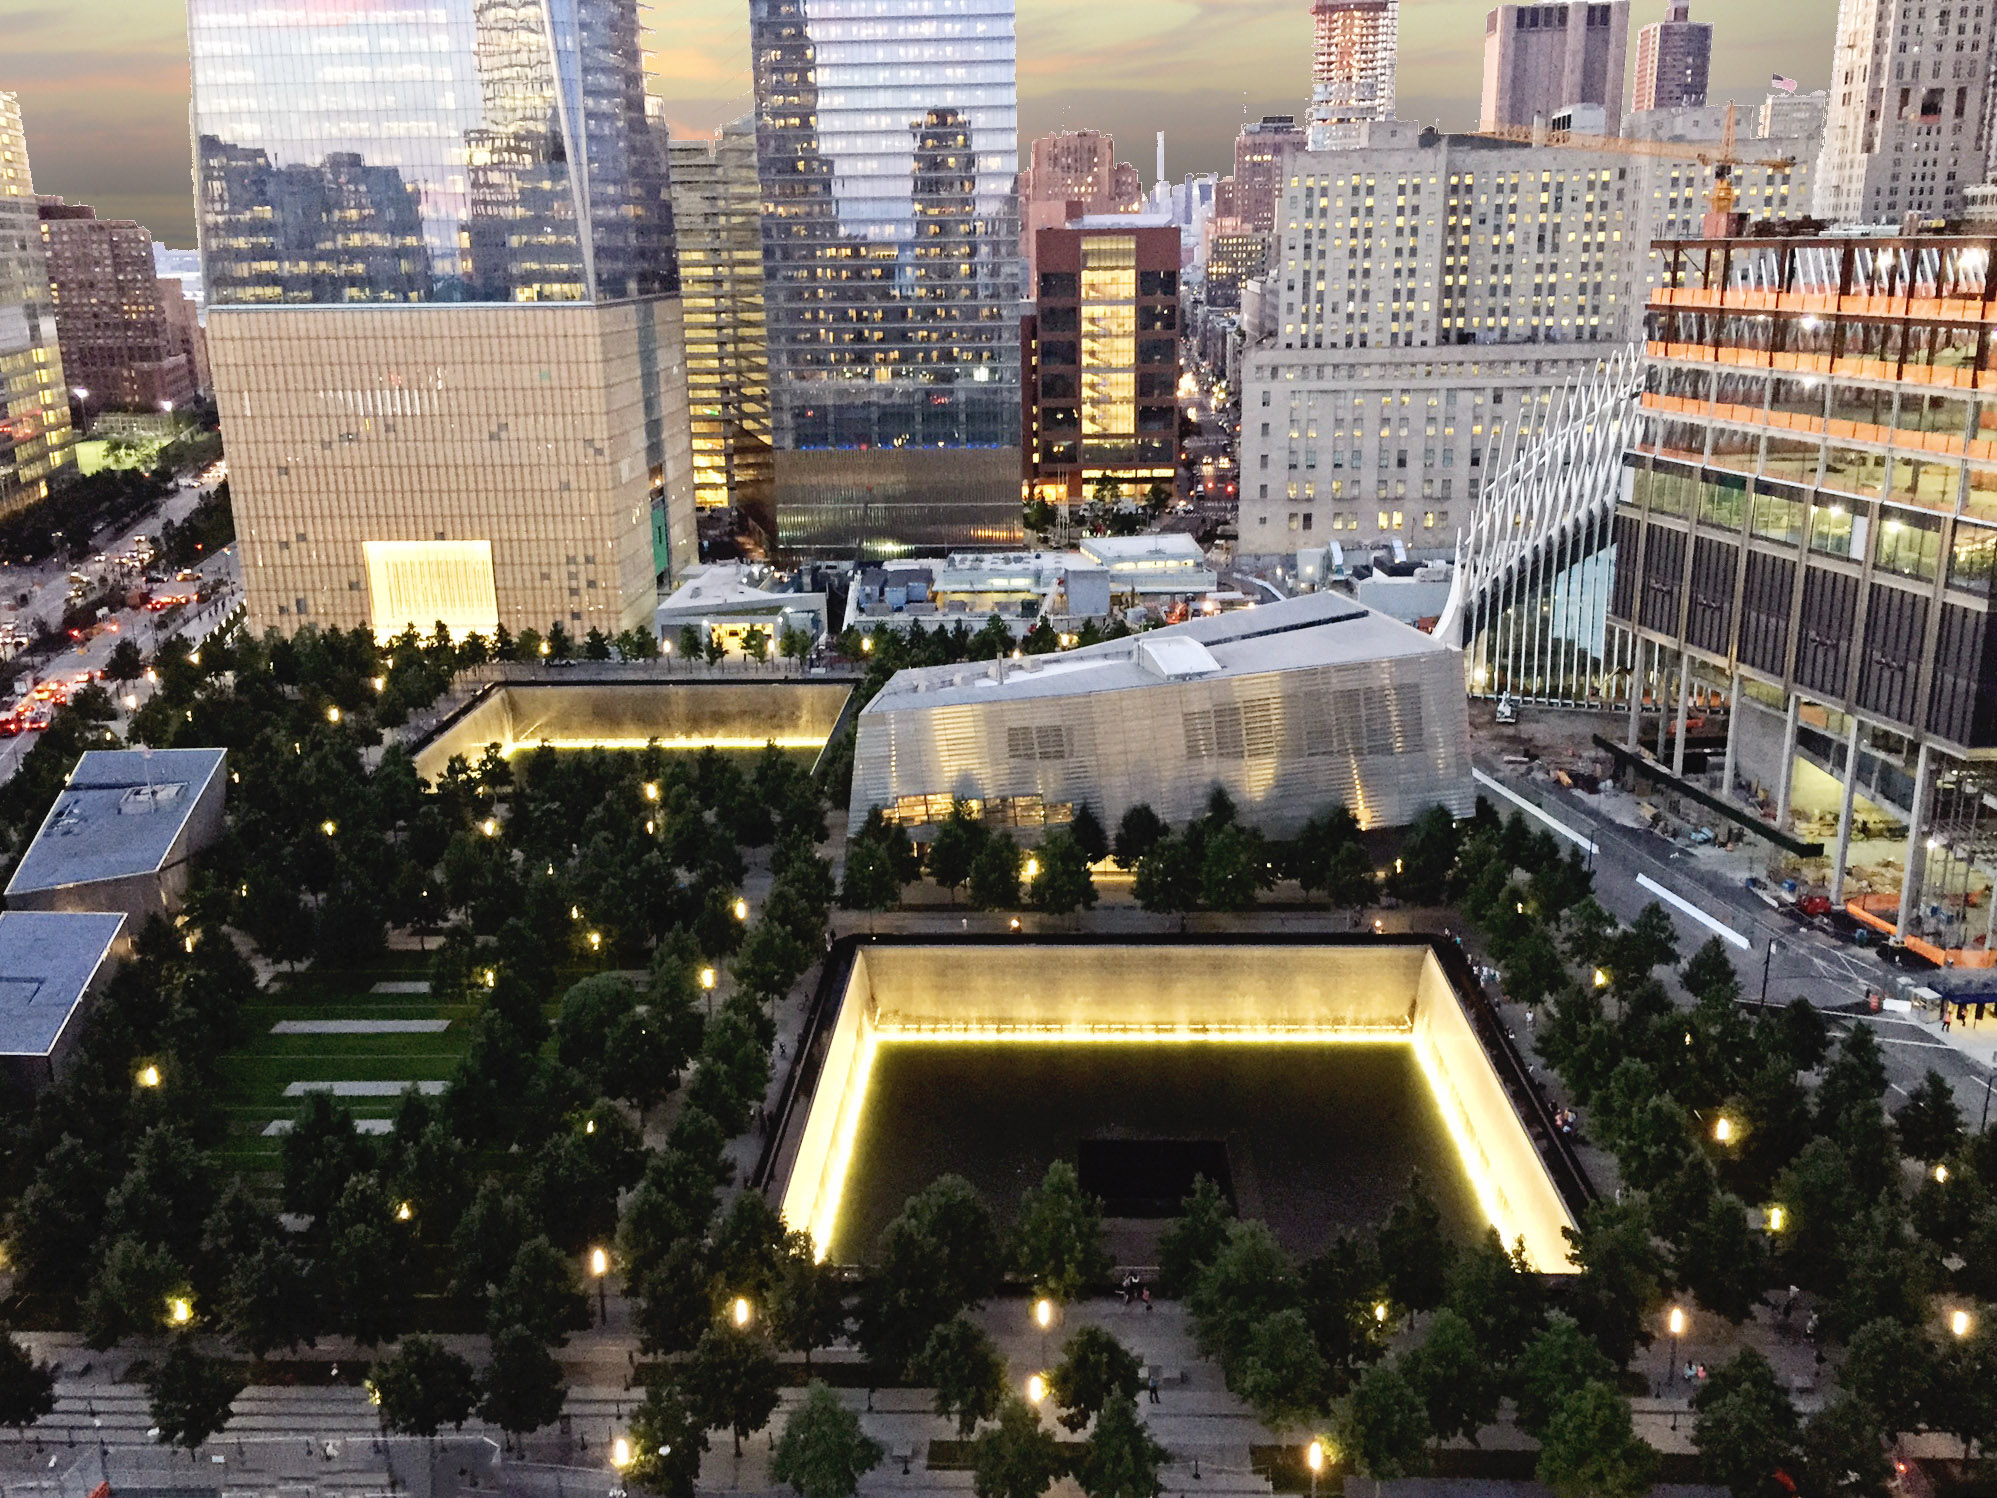 9/11 Memorial & Museum of New York